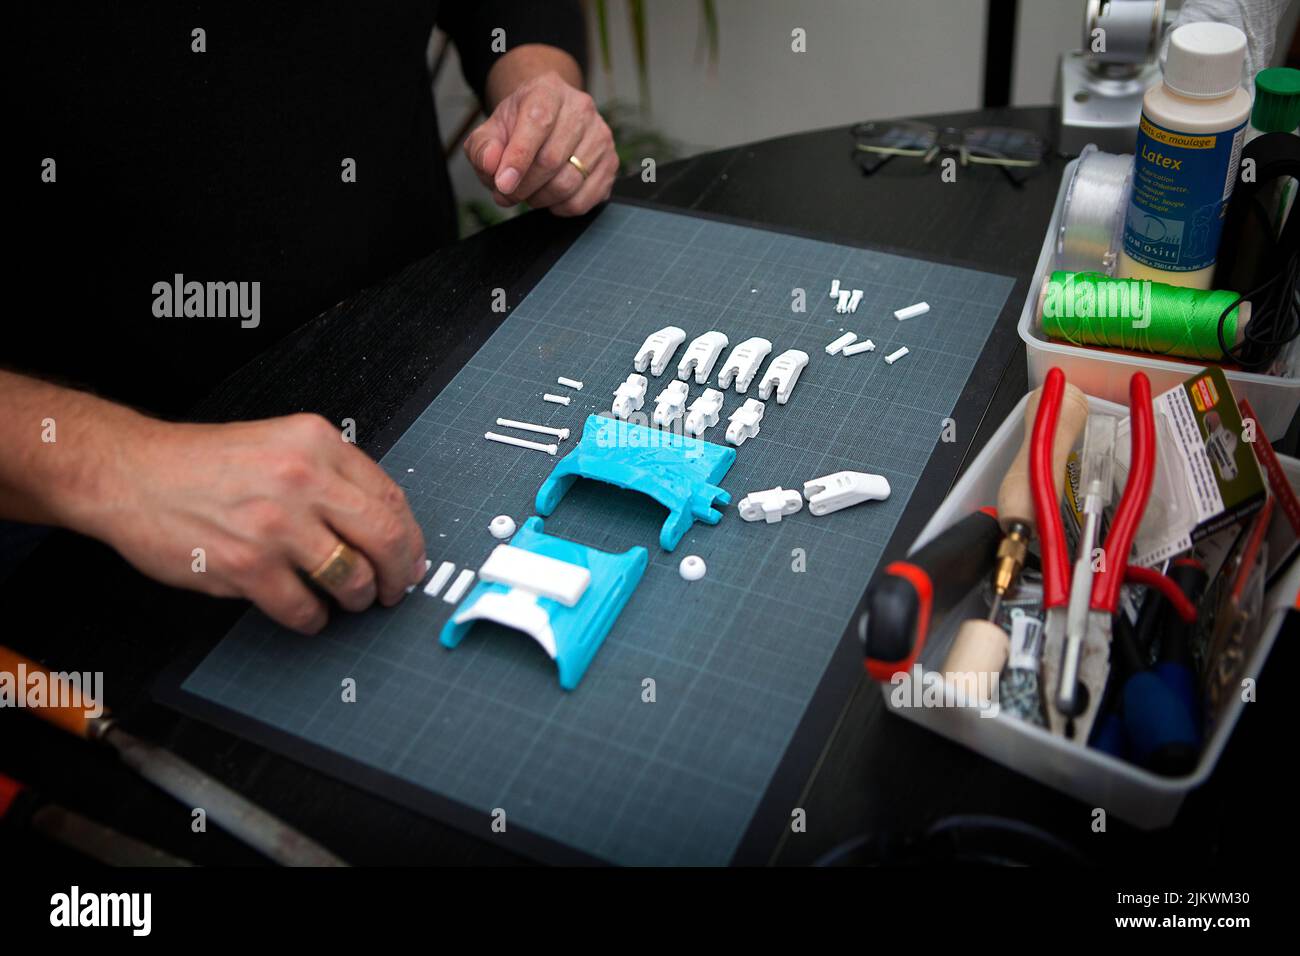 Fabrication d'une main robotique en 3D impression pour une personne handicapée. Banque D'Images